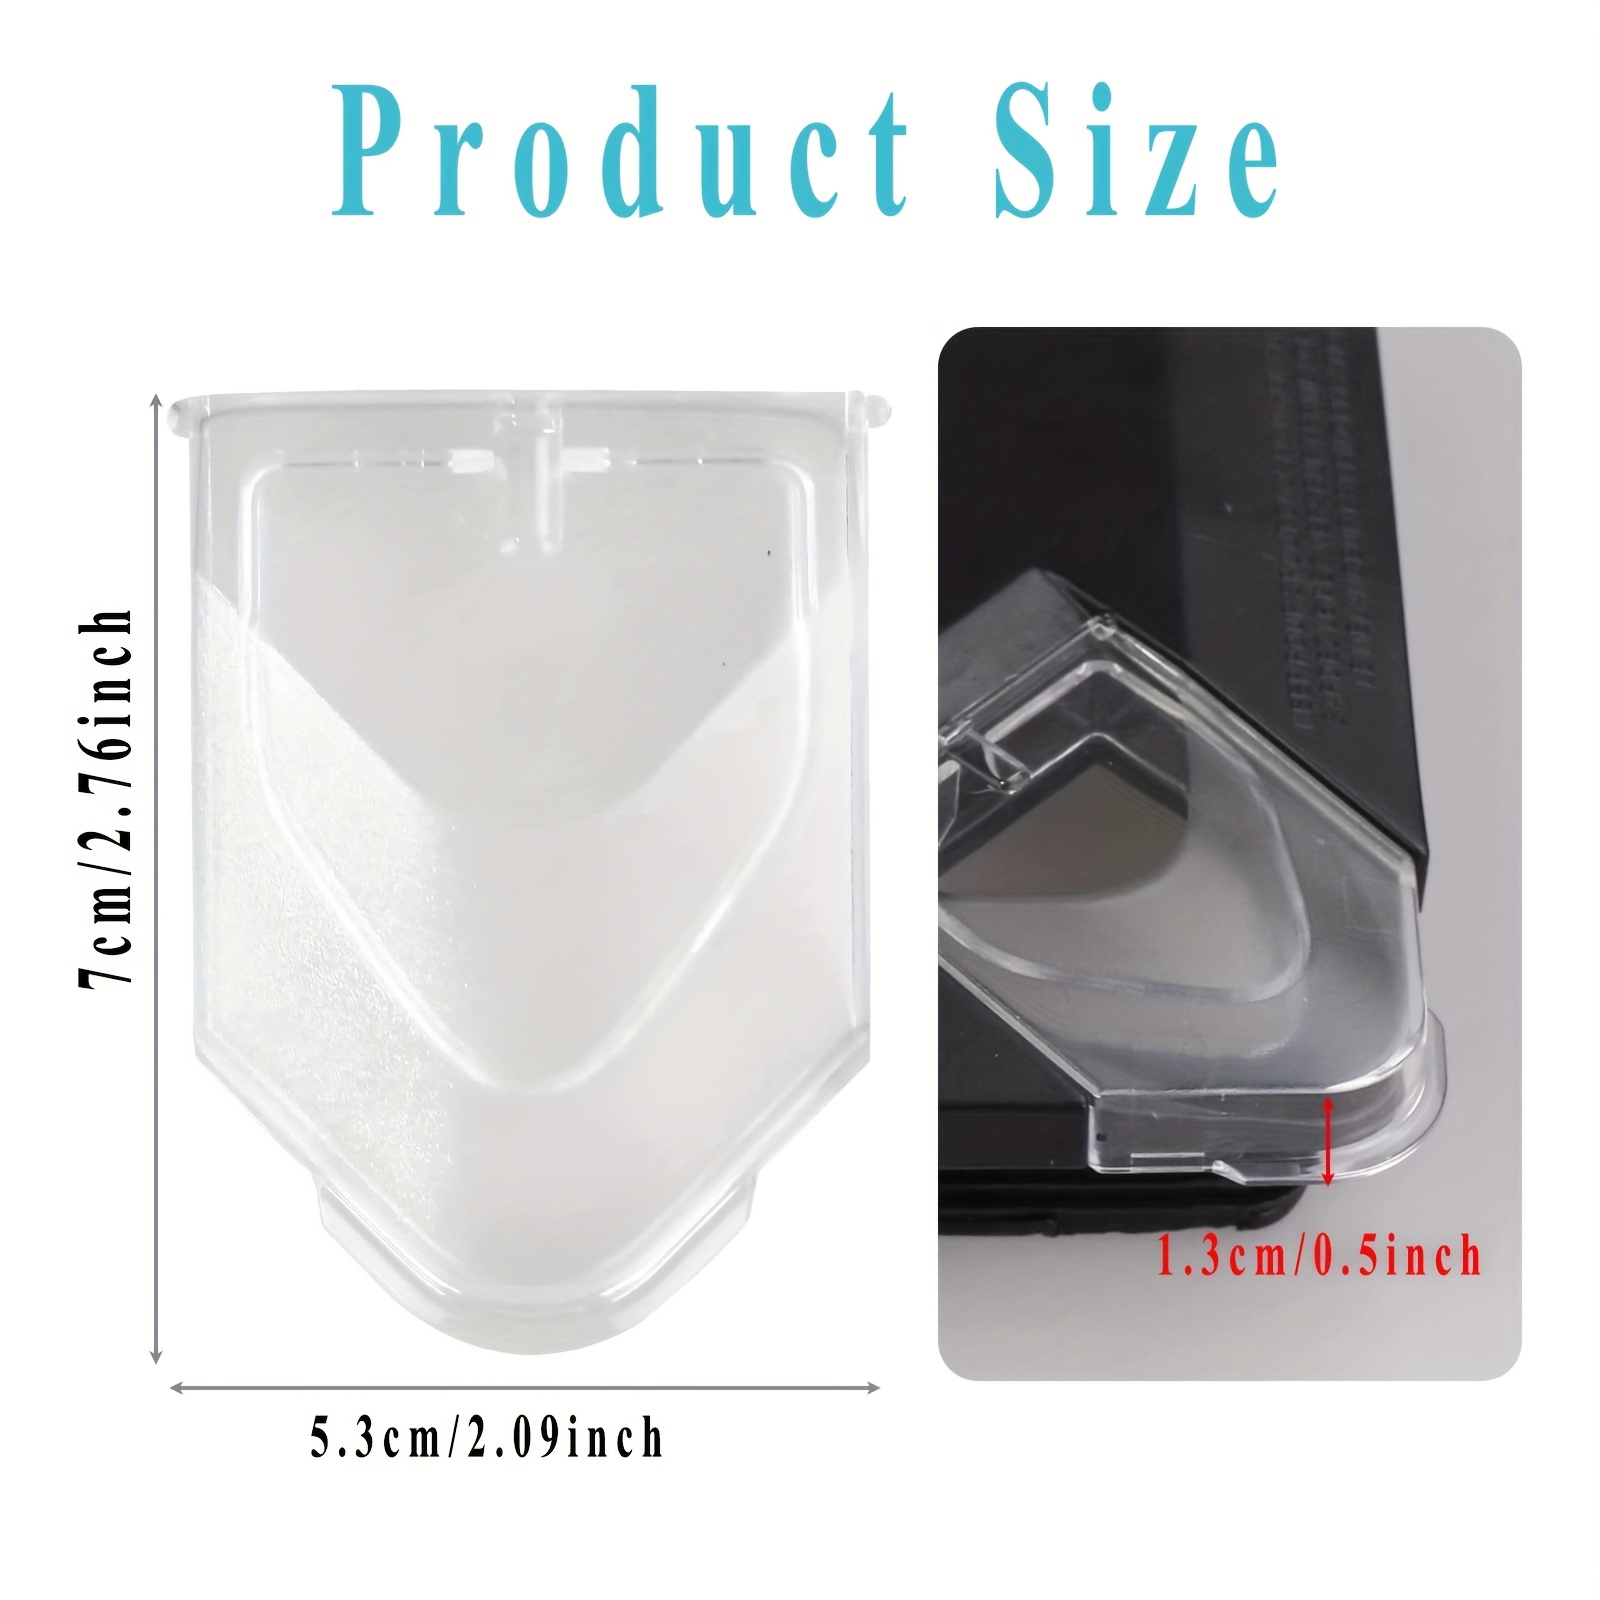 Blender Pitcher Pour Spout Cover Transparent Flap Lid Jar Top Replacement  Part for NINJA NJ600 NJ602 for BL500 BL781 - AliExpress